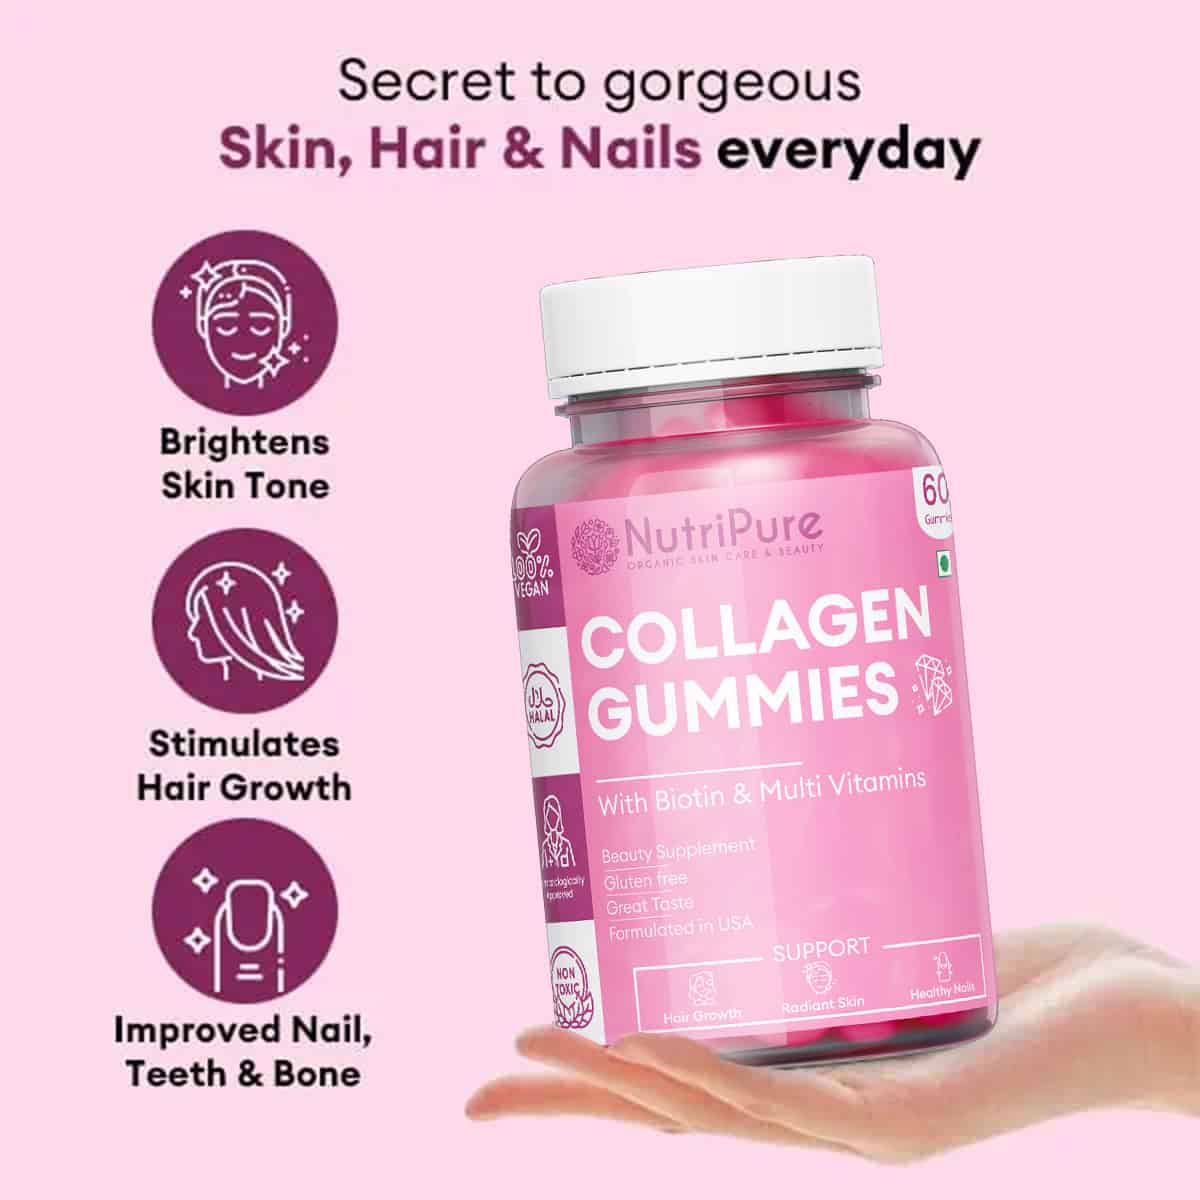 Collagen-Gummies-with-Biotin-Vitamin-C-Supports-Hair-Skin-Nails-Benefits-13